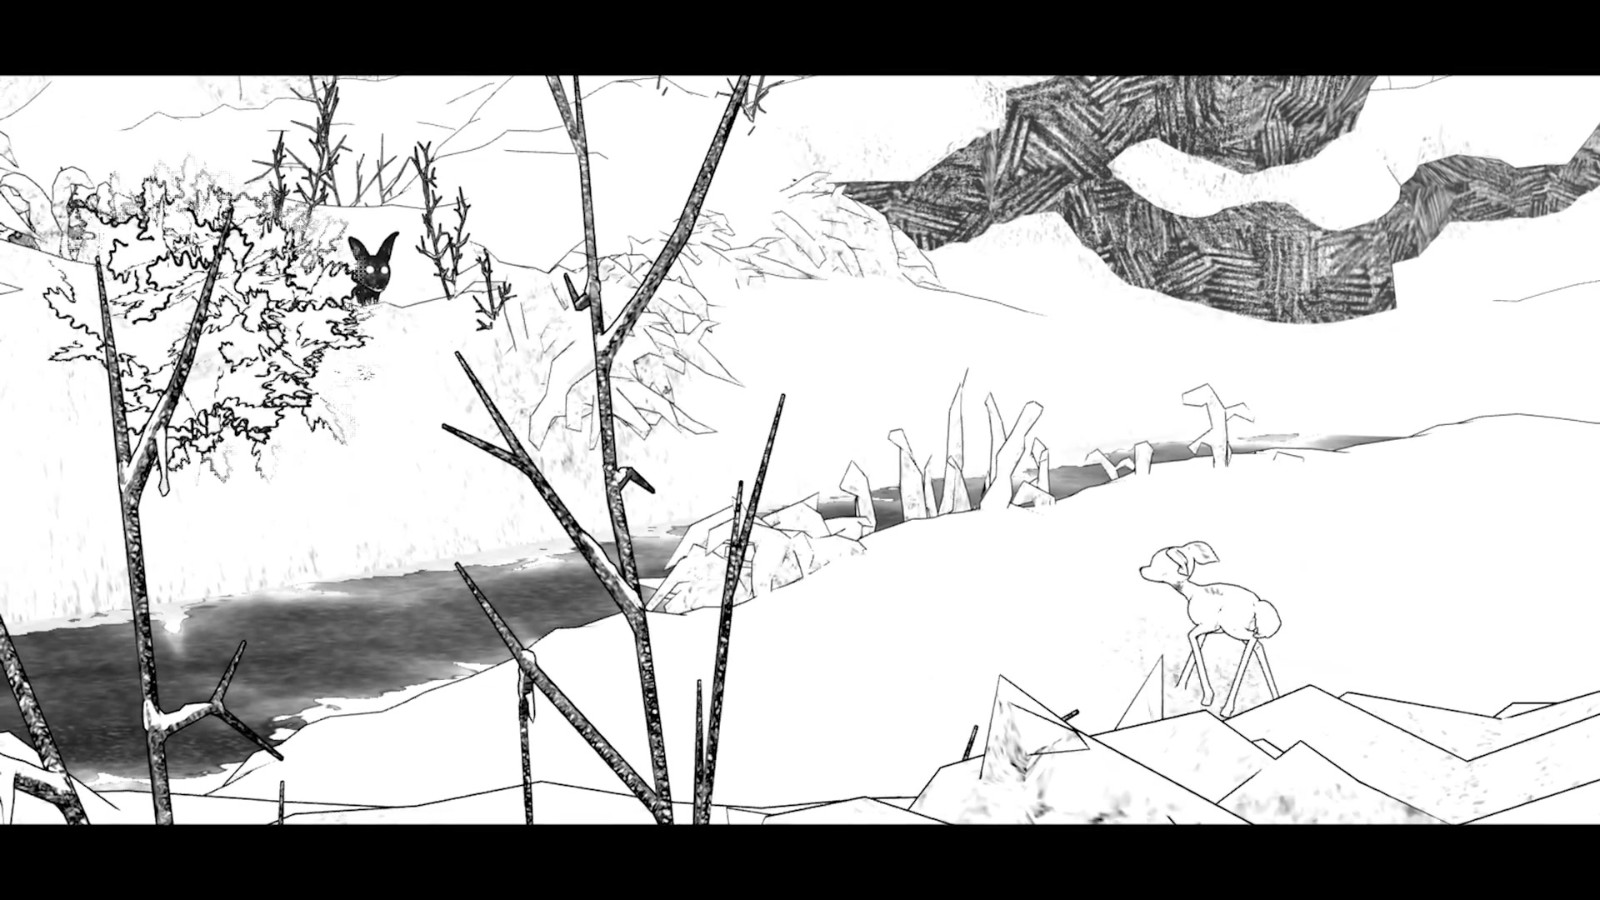 黑白手绘风格冒险游戏《白之旅》明年2/14发行